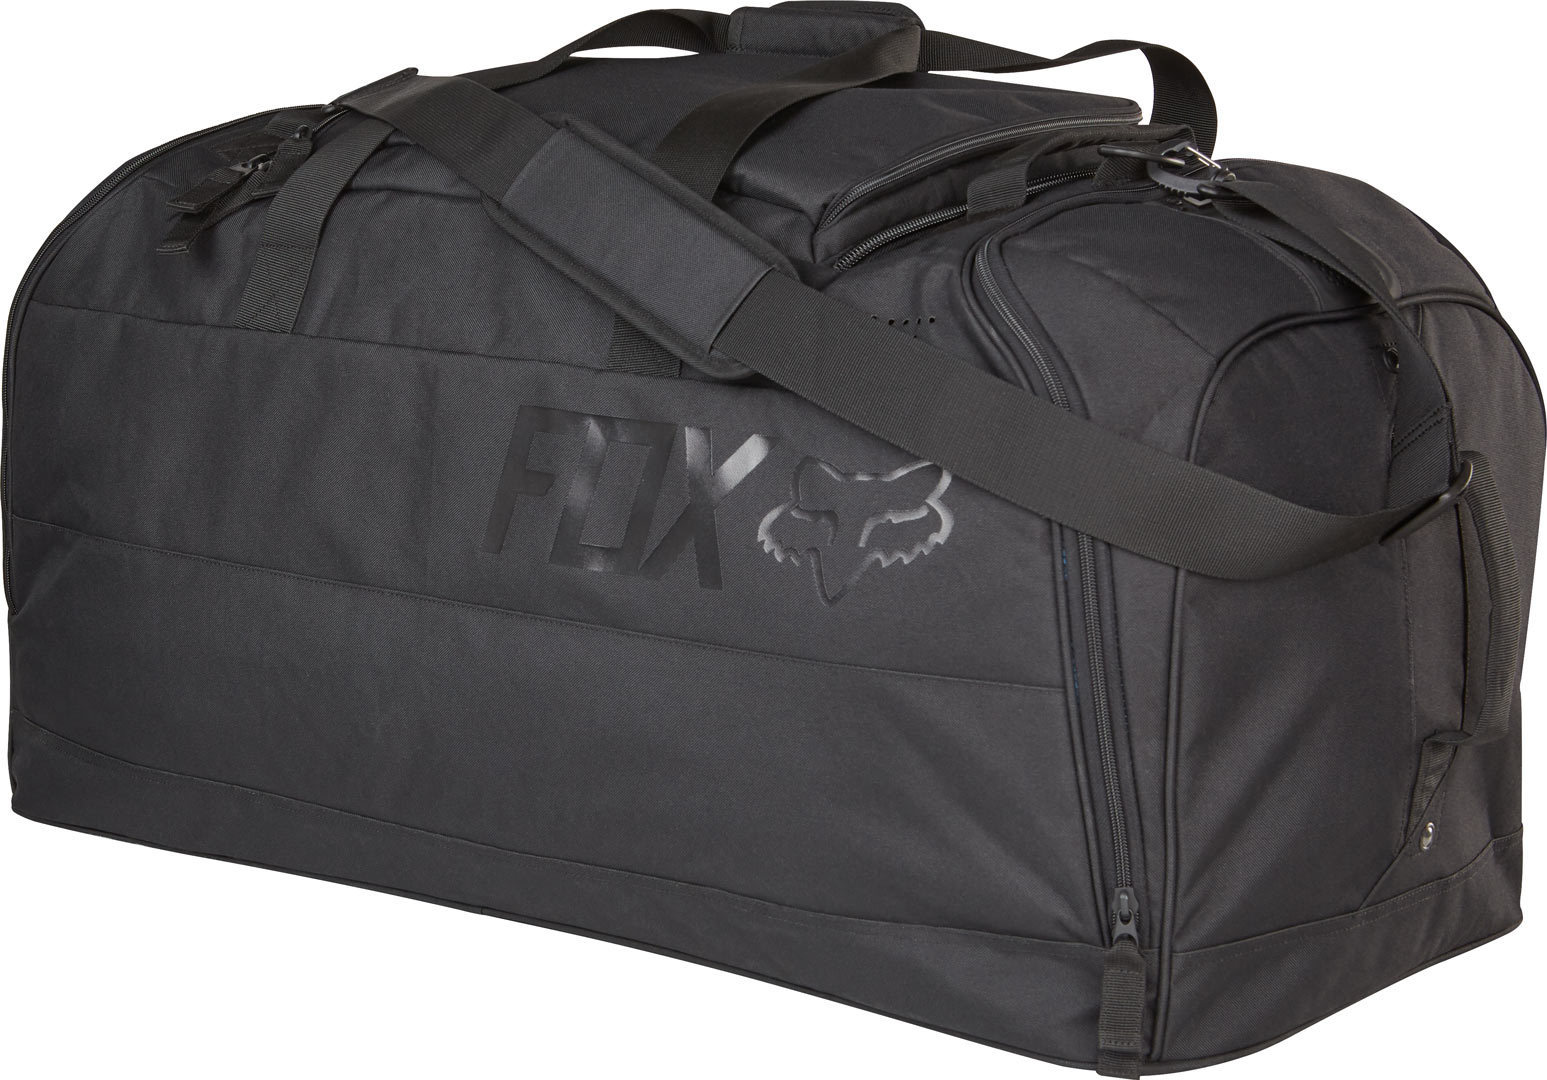 FOX Podium 2017 Travel Bag Sac d’équipement Noir unique taille